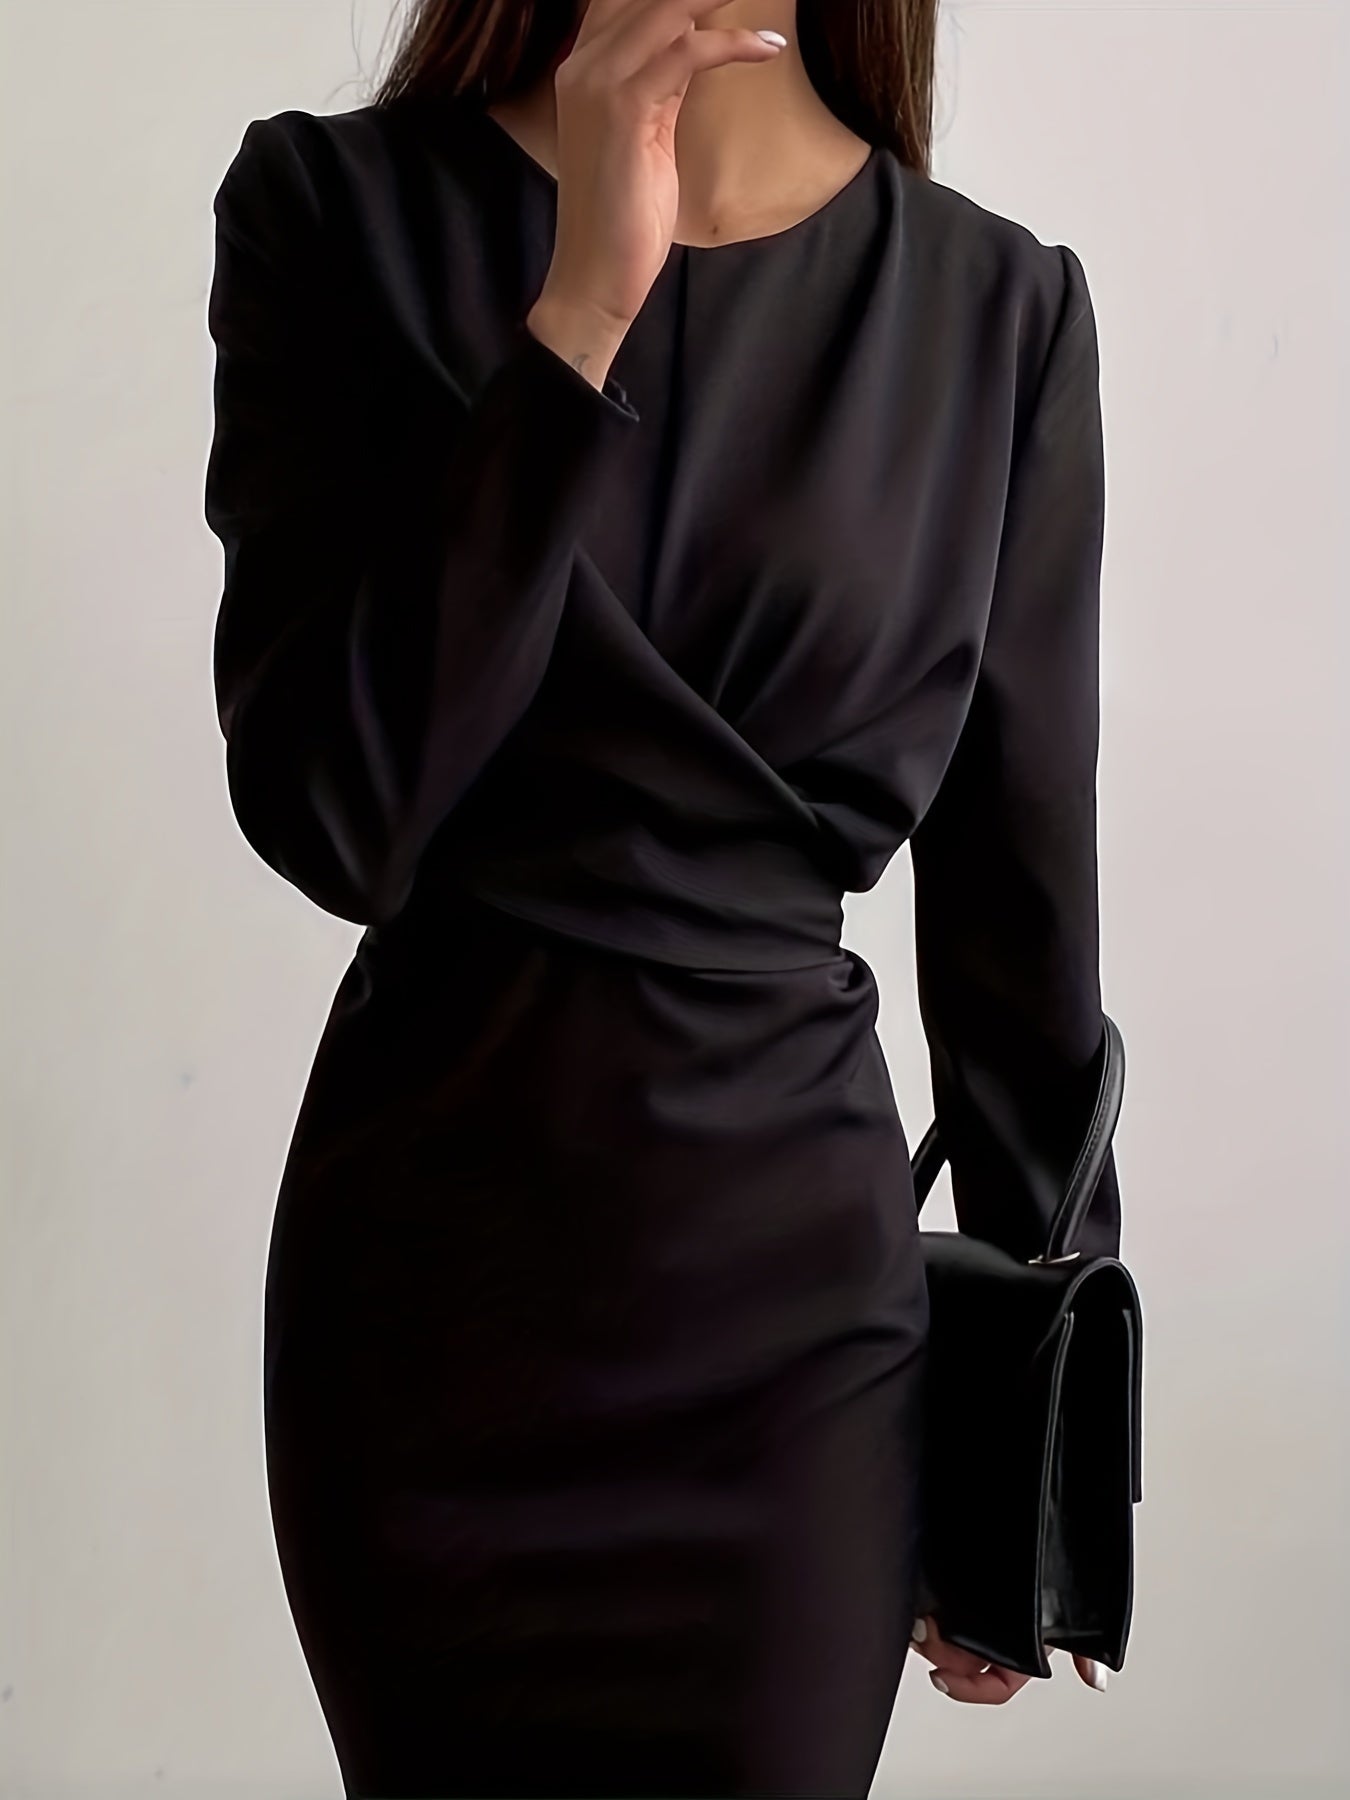 Vzyzv Split Bodycon Dress, Elegant Round Neck Long Sleeve Dress, Women's Clothing